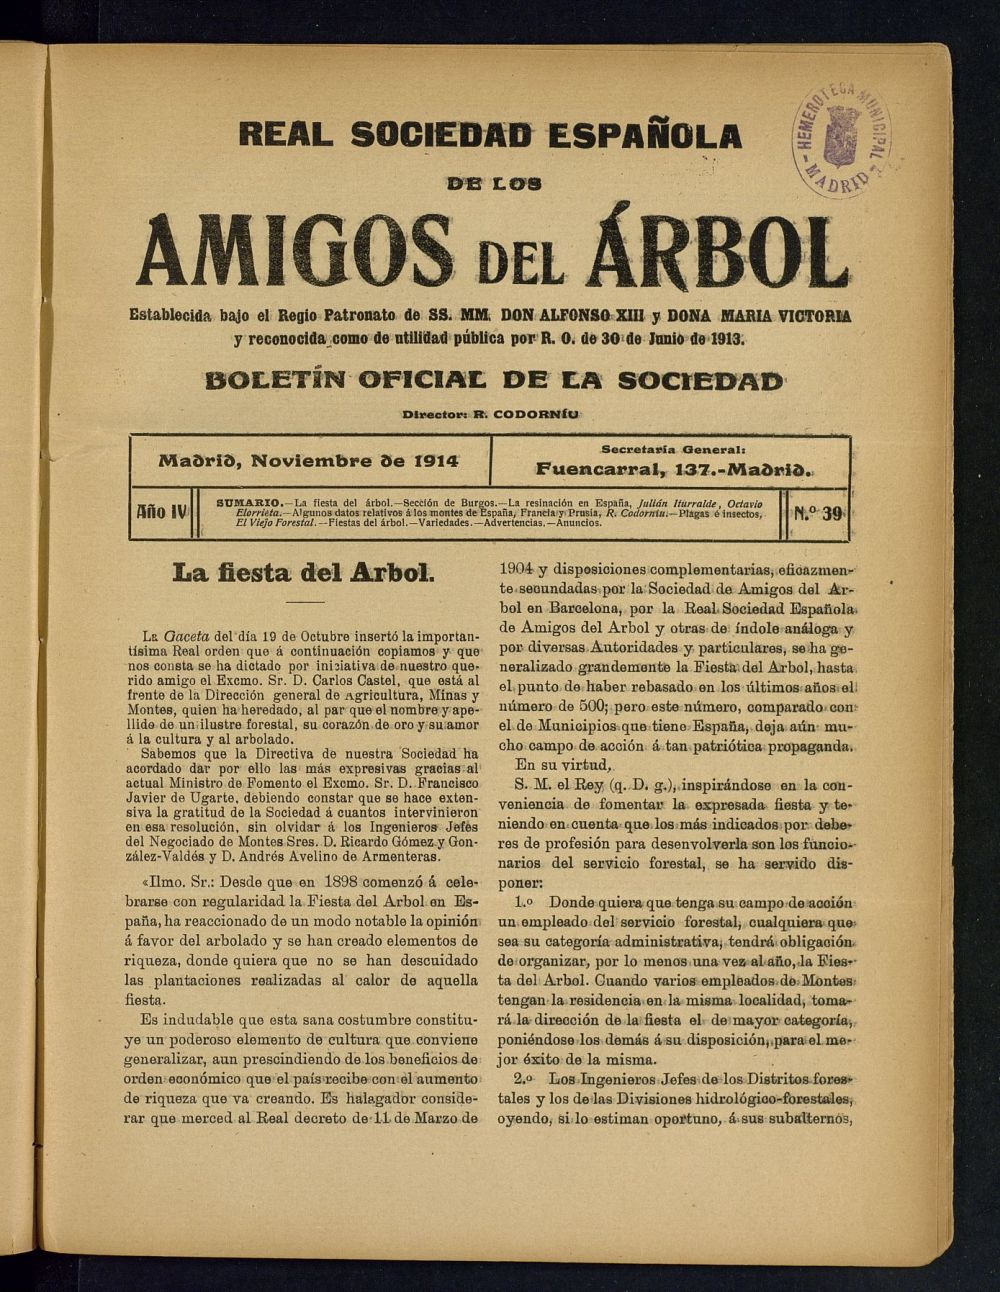 Boletn Comisin organizadora de la Sociedad Espaola de los amigos del rbol de noviembre de 1914